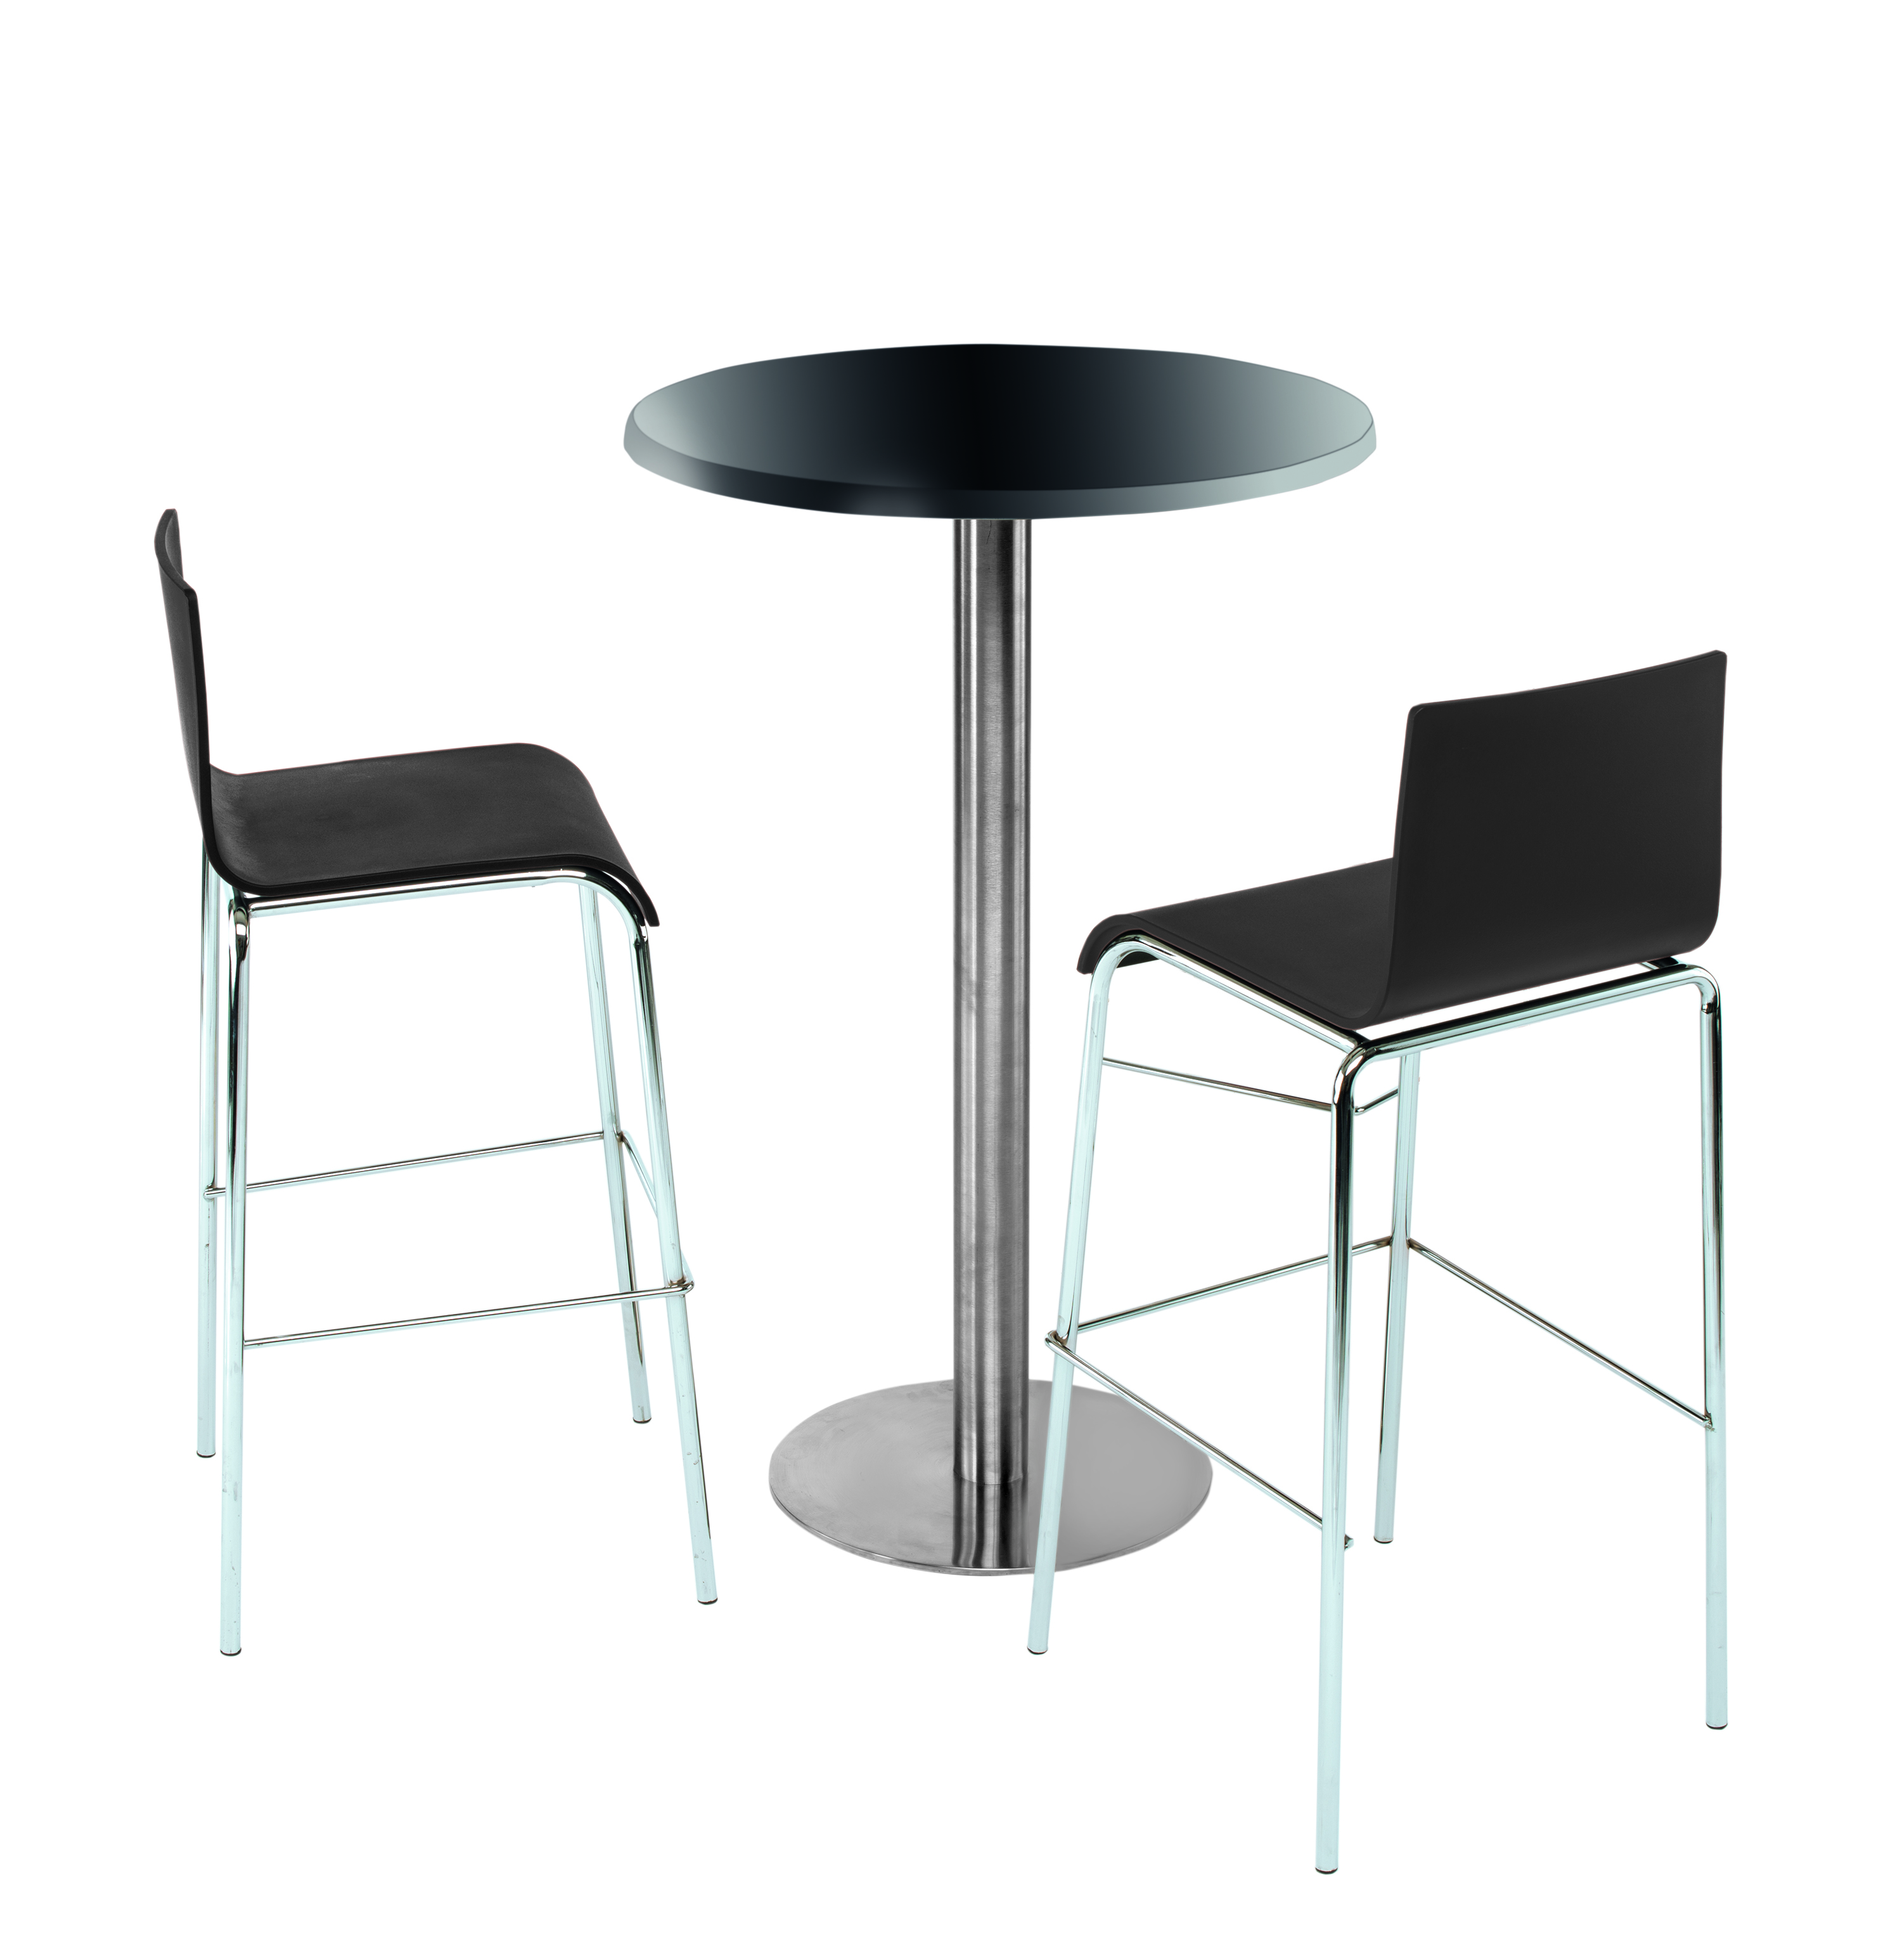 LUNA Barhocker (schwarz, weiß) - Barstühle / Tresenstühle, elegant & MEGA-reduziert (Kunststoff, Metall verchromt)